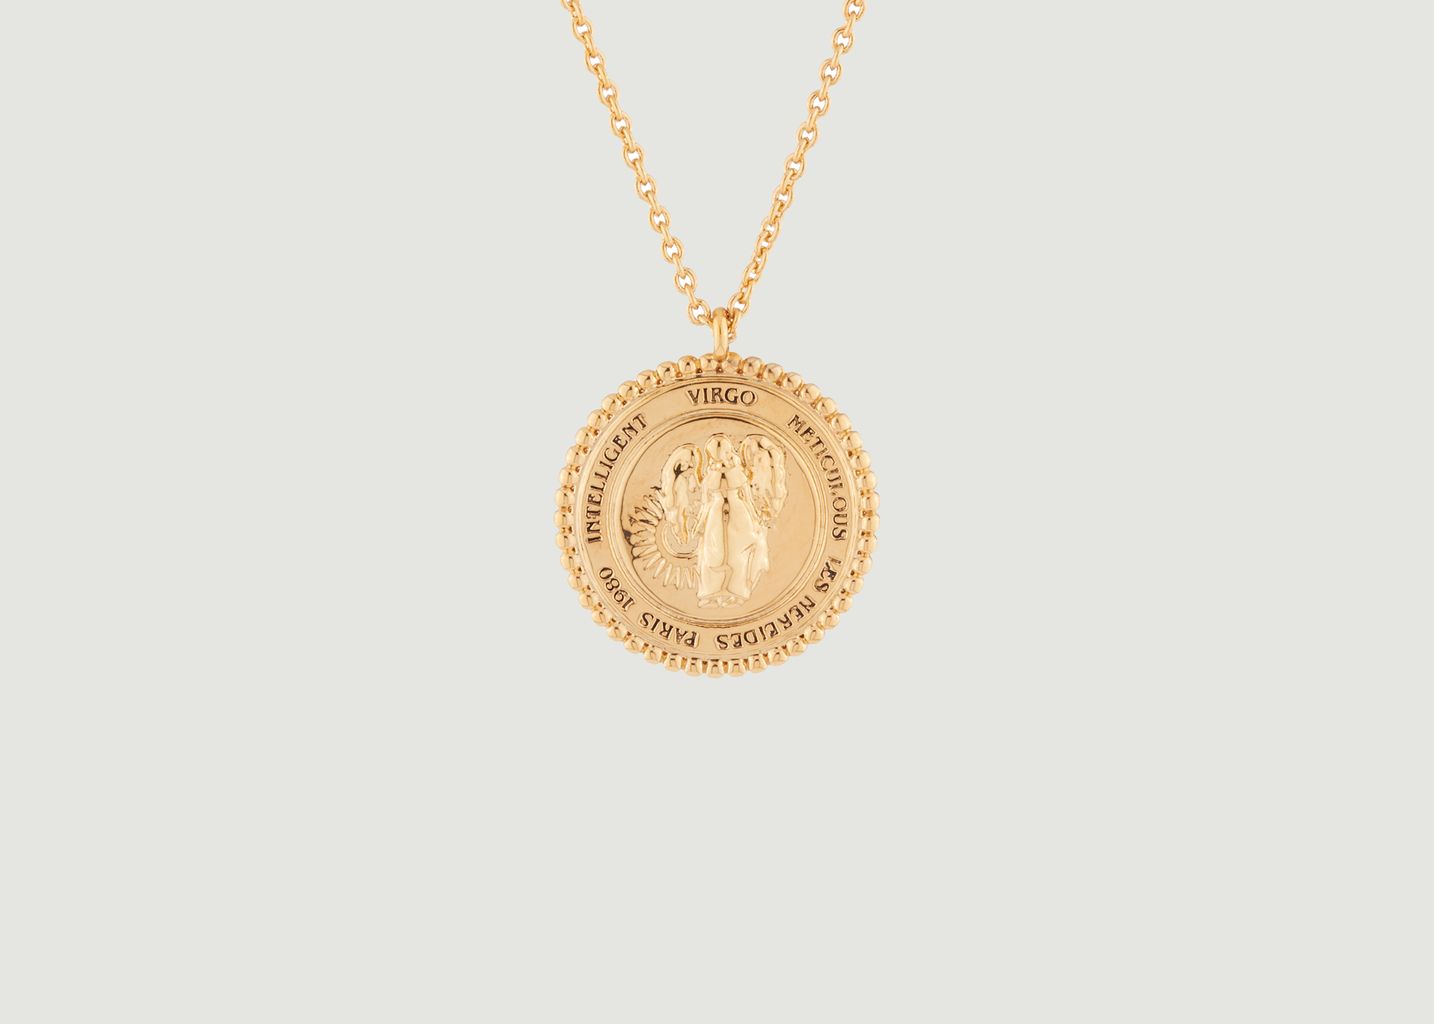 Collier avec pendentif signe astrologique Vierge - Les Néréides